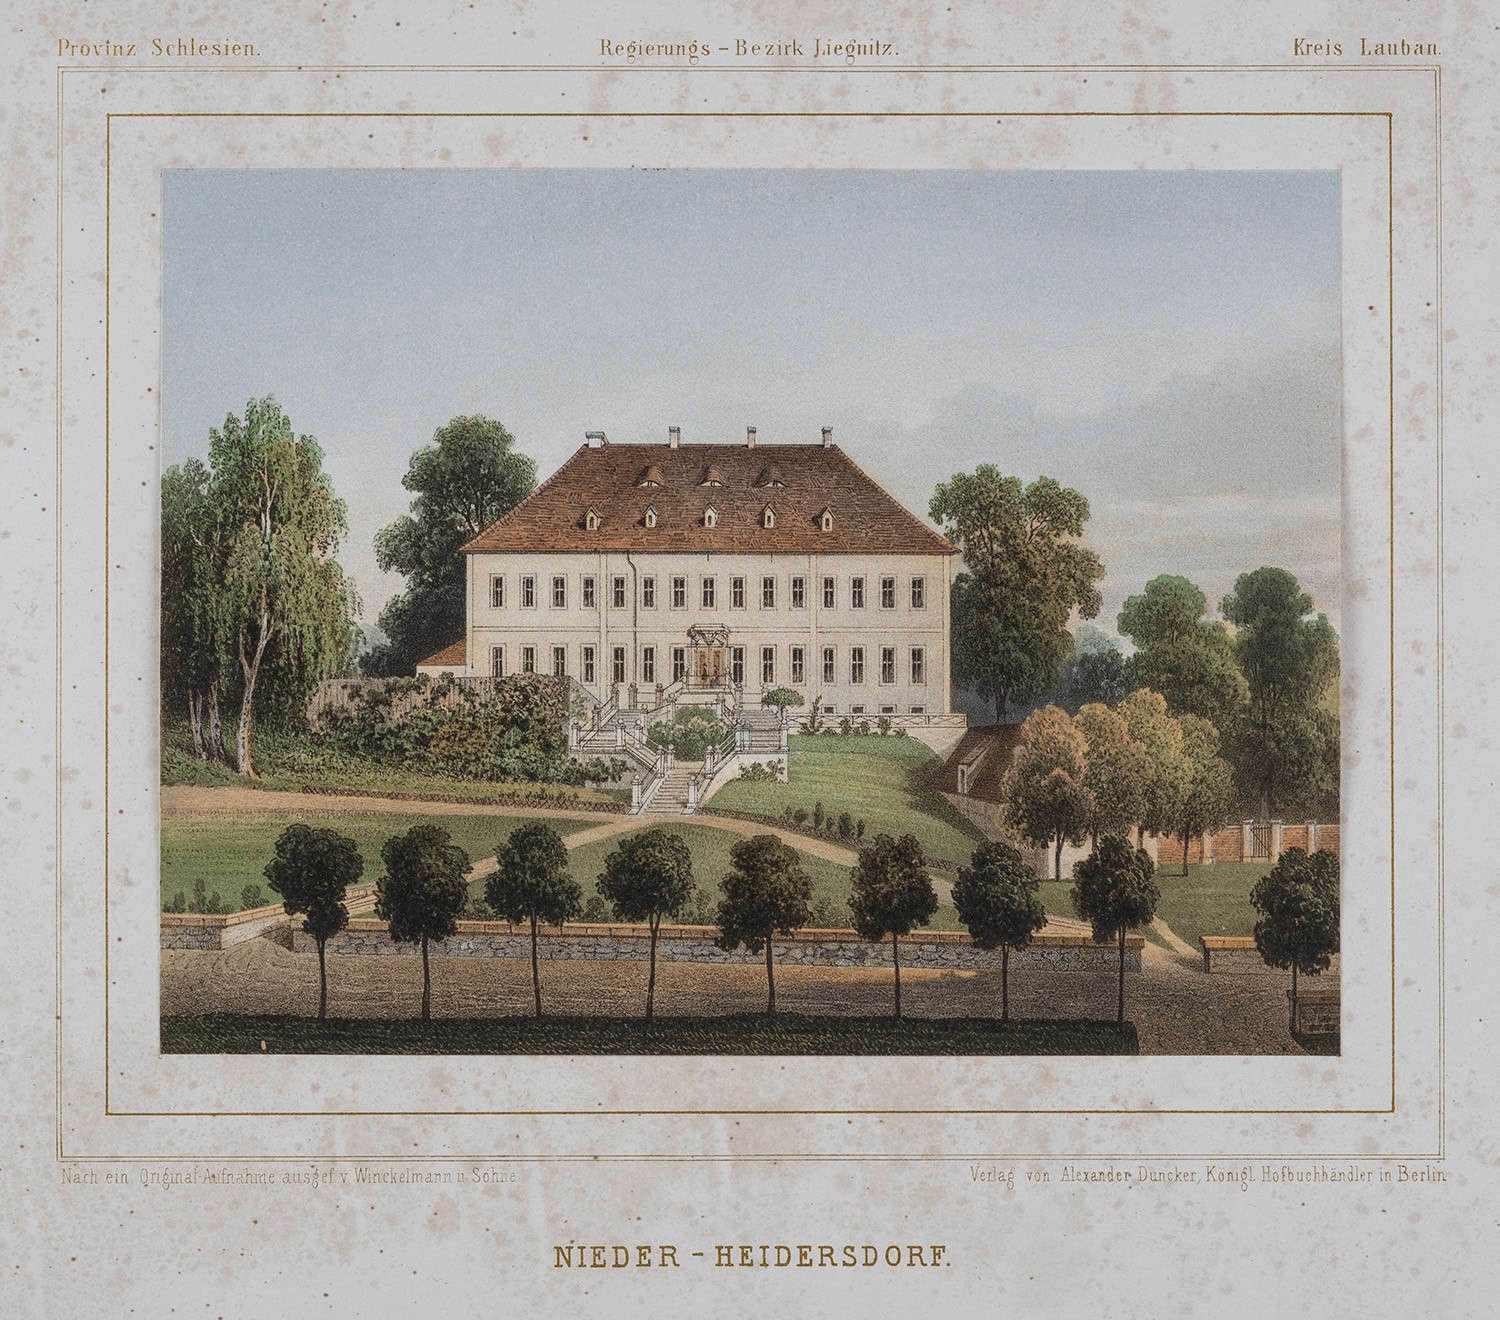 Nieder Heidersdorf (Kr. Lauban, Schlesien): Herrenhaus, Gartenseite (Landesgeschichtliche Vereinigung für die Mark Brandenburg e.V., Archiv CC BY)